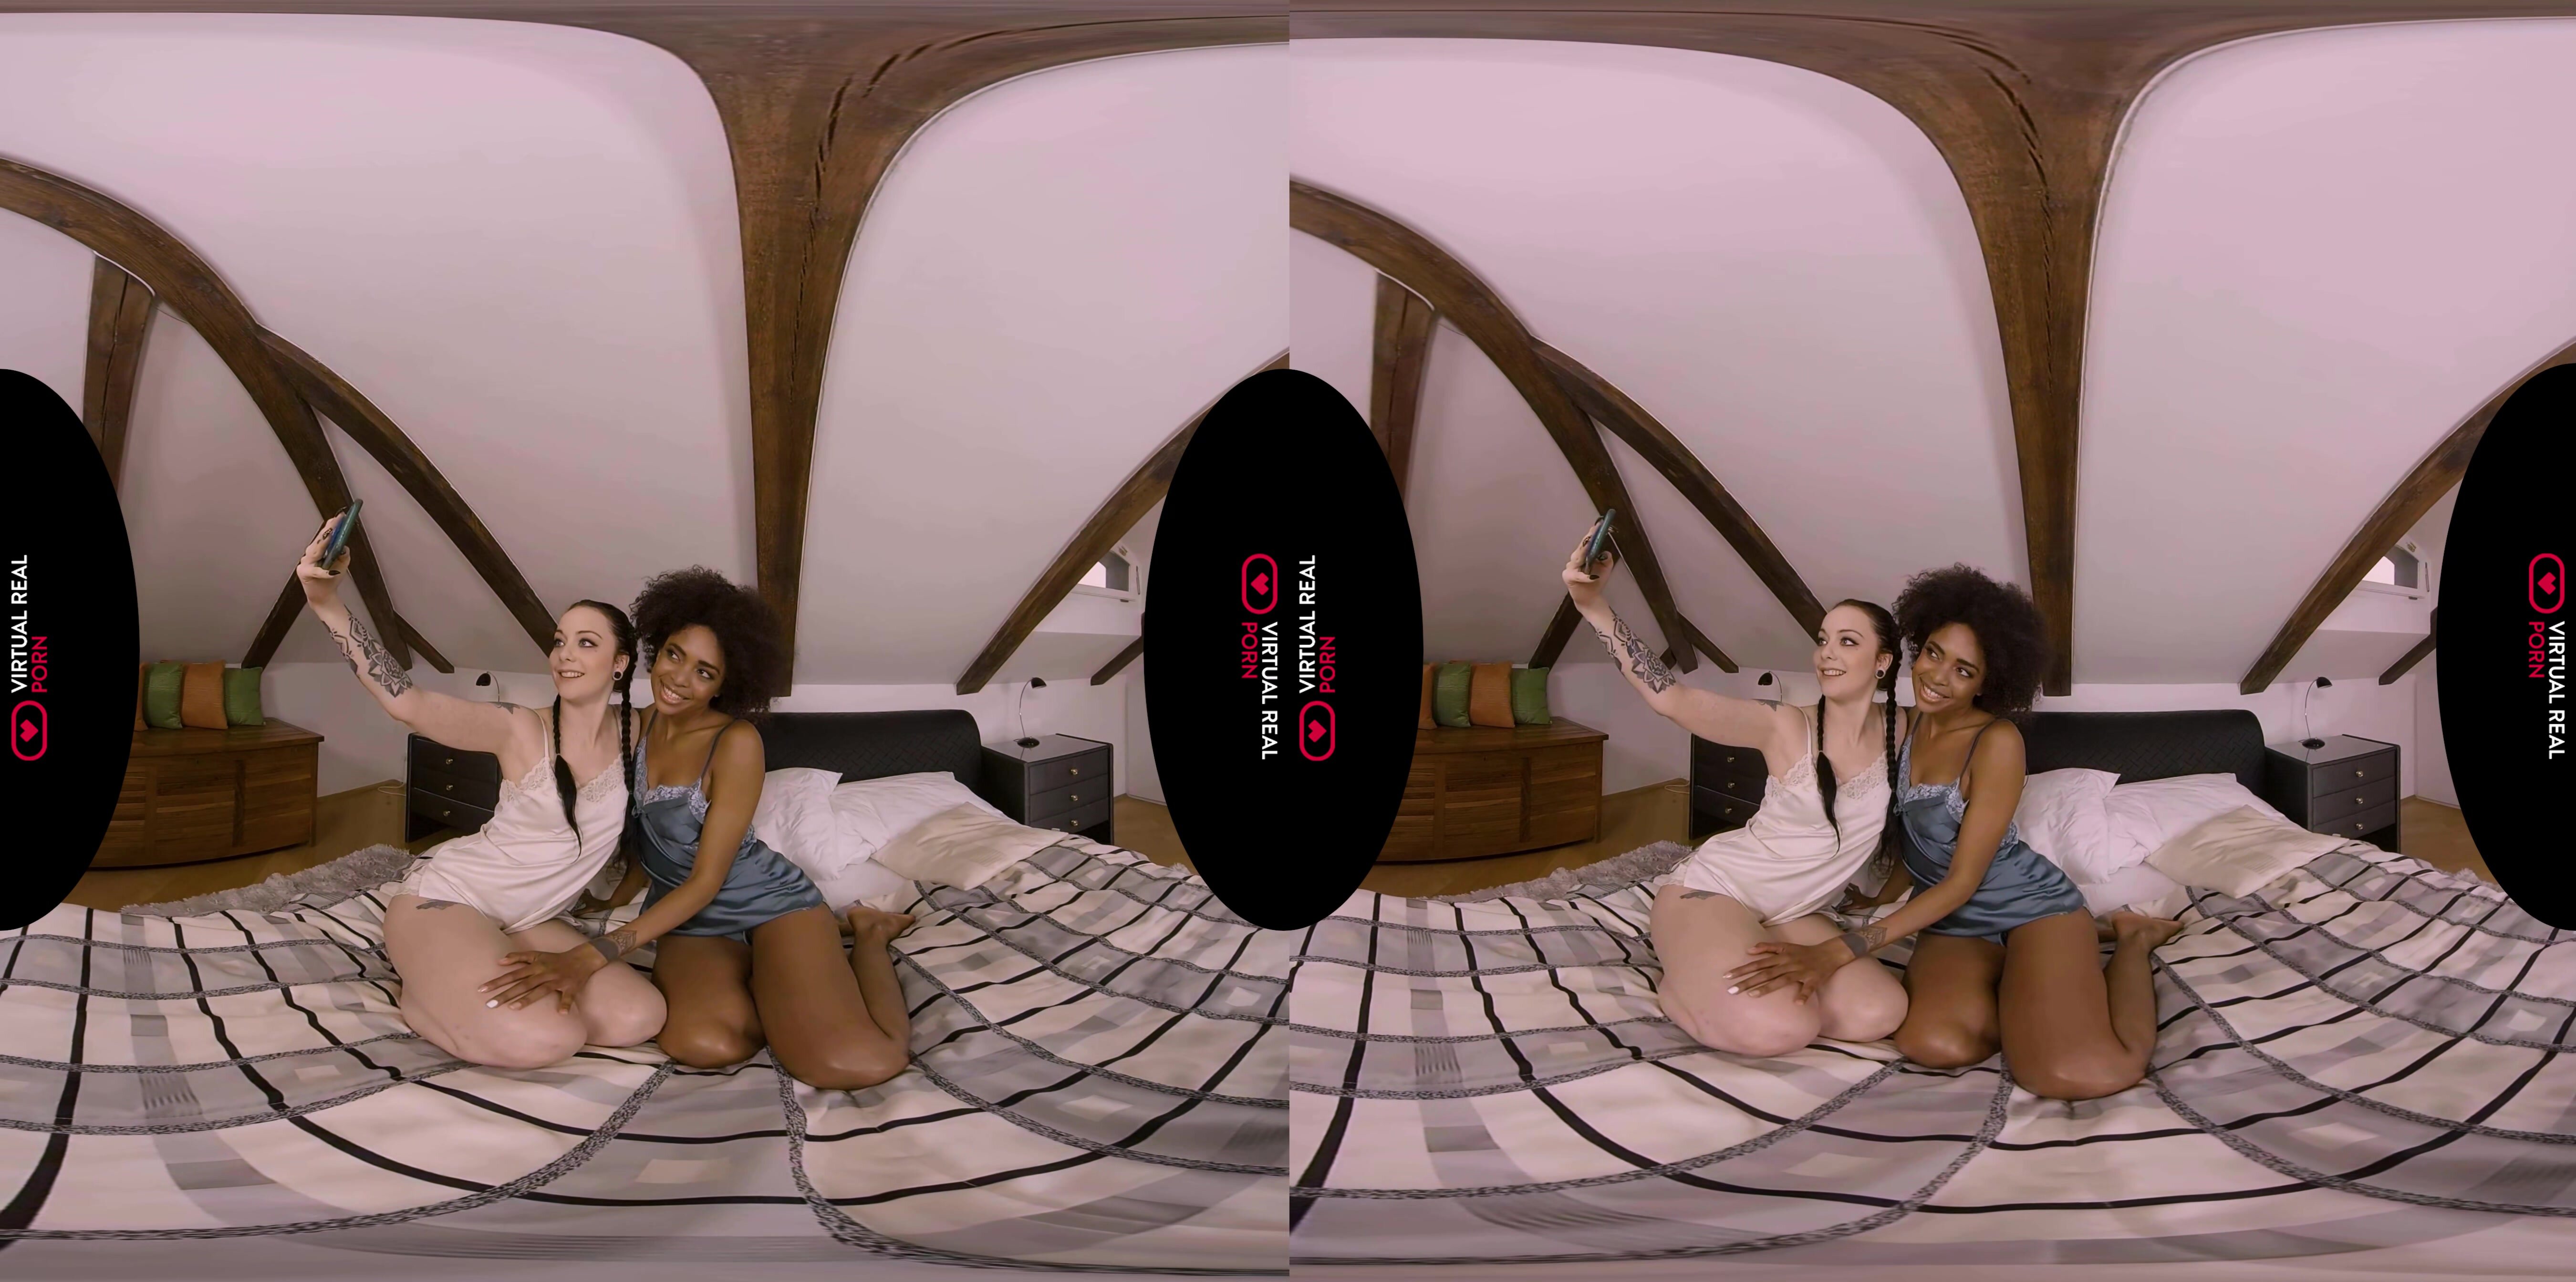 Luna Corazon - Whiskey lips VR in 4K